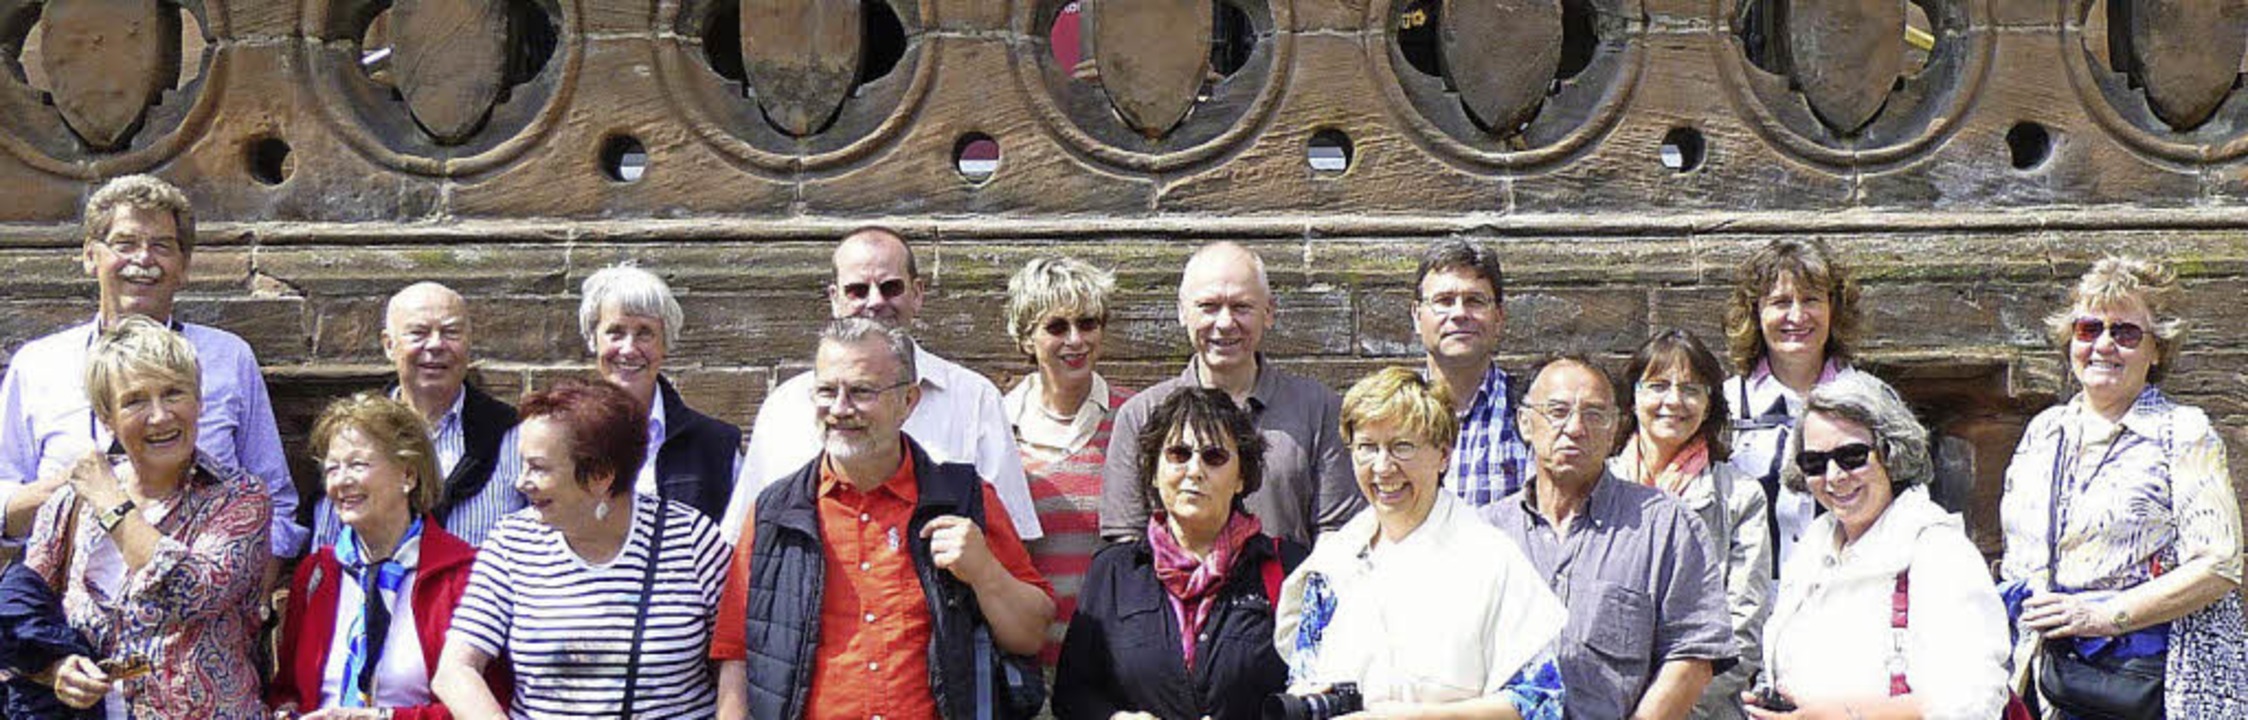 Die Lörracher Reisegruppe in Chester.   | Foto: ZVG